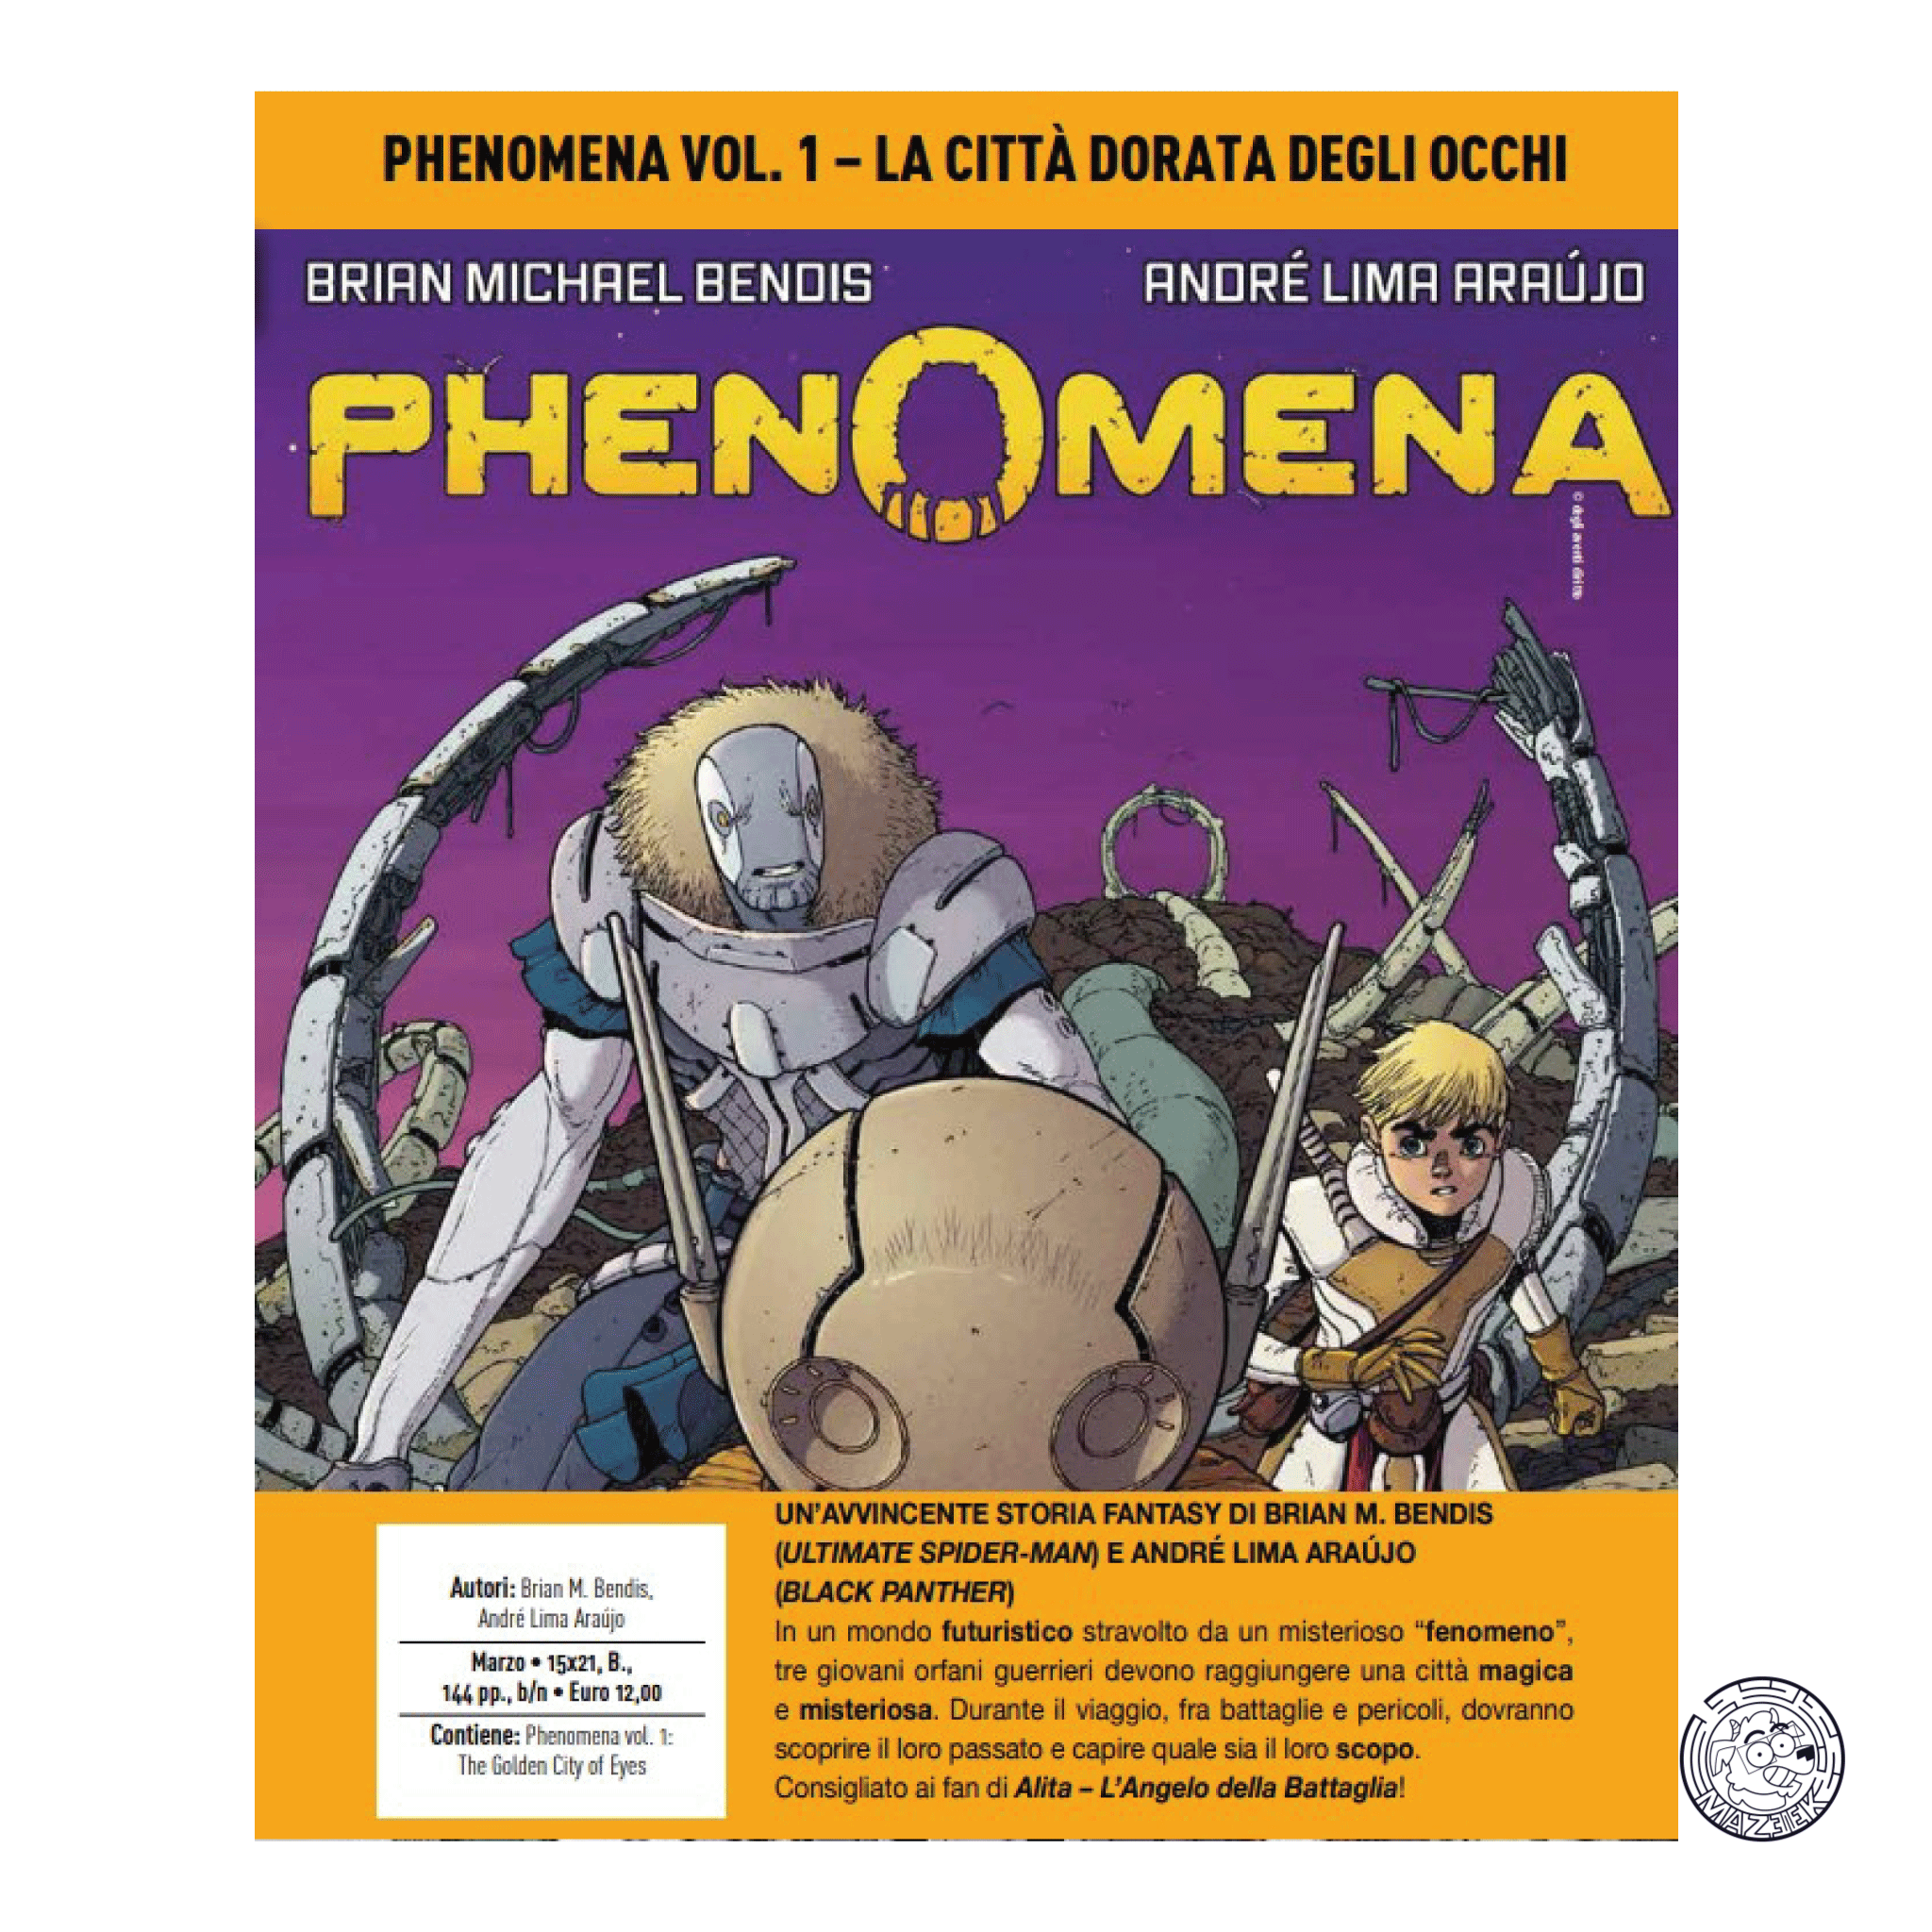 Phenomena Vol. 01 – The Golden City of Eyes